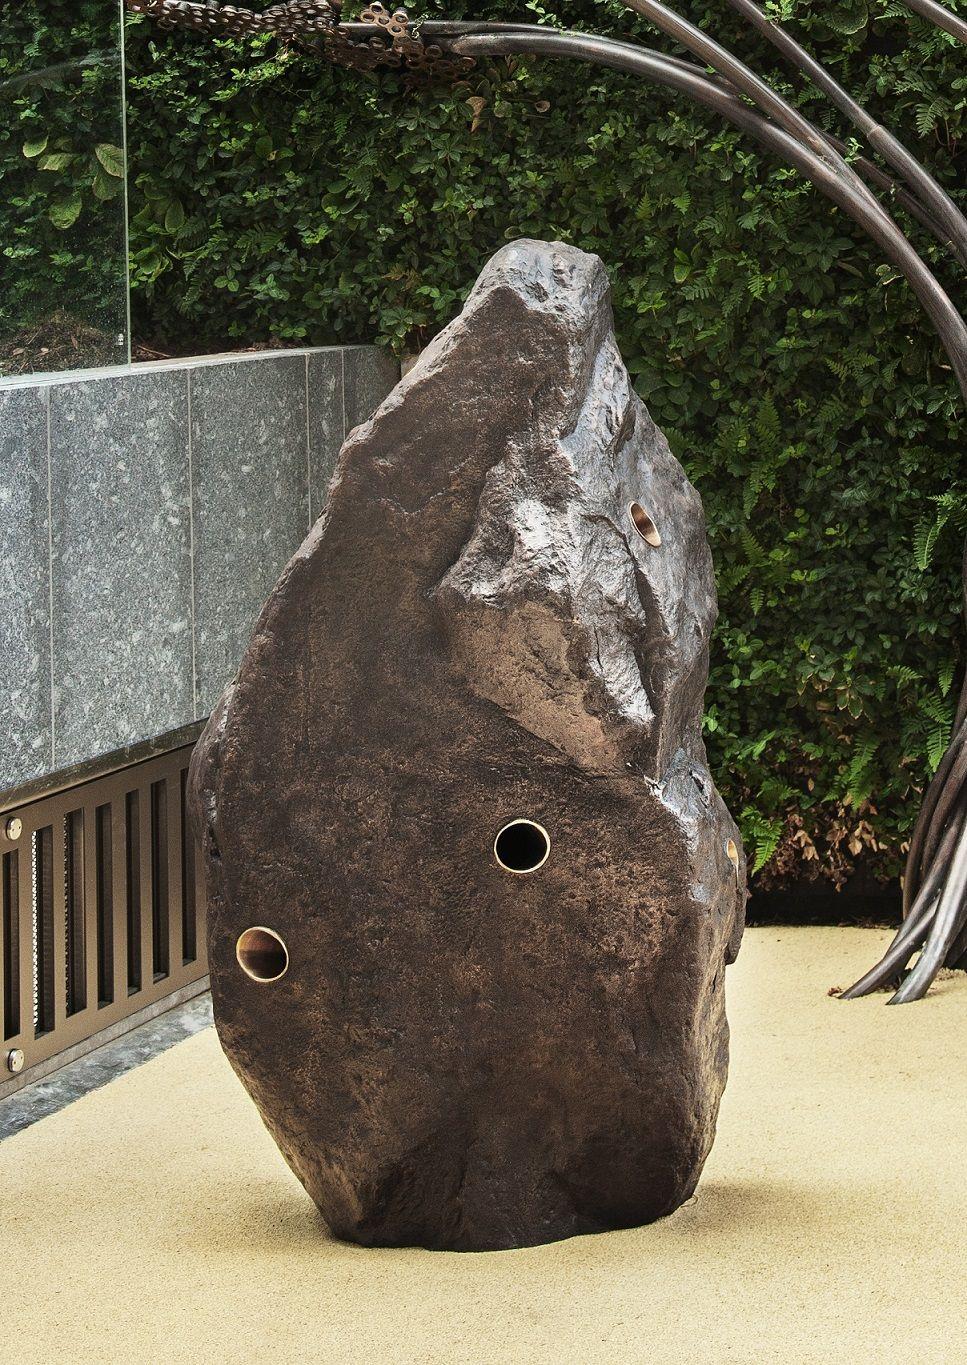 Boulder #1 - The Speaker est une sculpture en bronze de l'artiste contemporain Tom Price, dont les dimensions sont 170 × 100 × 65 cm (66,9 × 39,4 × 25,6 in). 
Cette œuvre est disponible sur commande. Il sera créé sur la même base que celle présentée